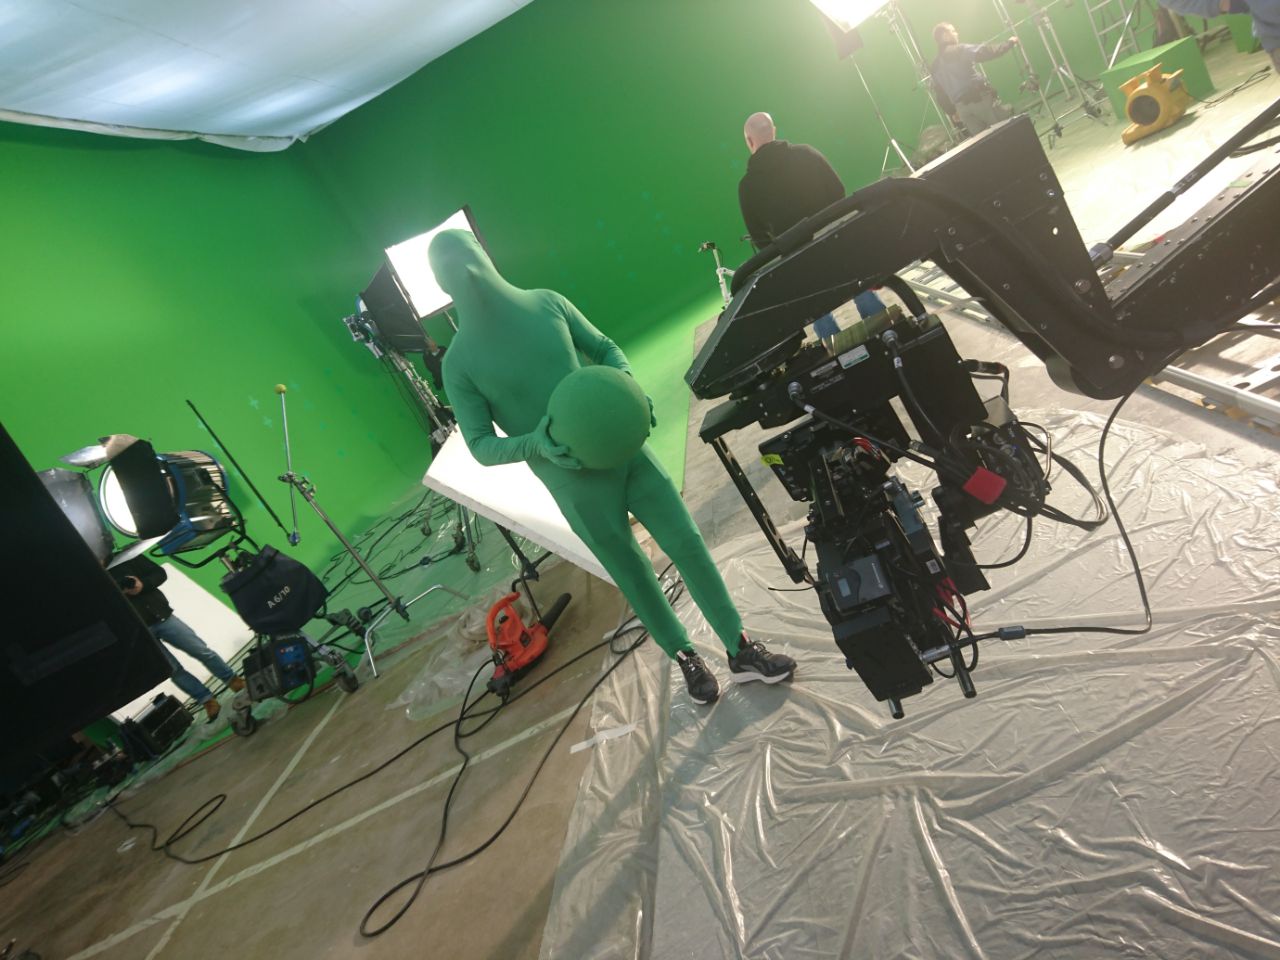 Однажды Анатолий участвовал в съёмках рекламы, которой занимался Фёдор Бондарчук. Он был «зелёным человечком» — надел хромакейный костюм и изображал дрон, который пролетал рядом с Дмитрием Нагиевым. Фото Анатолия Хабарова